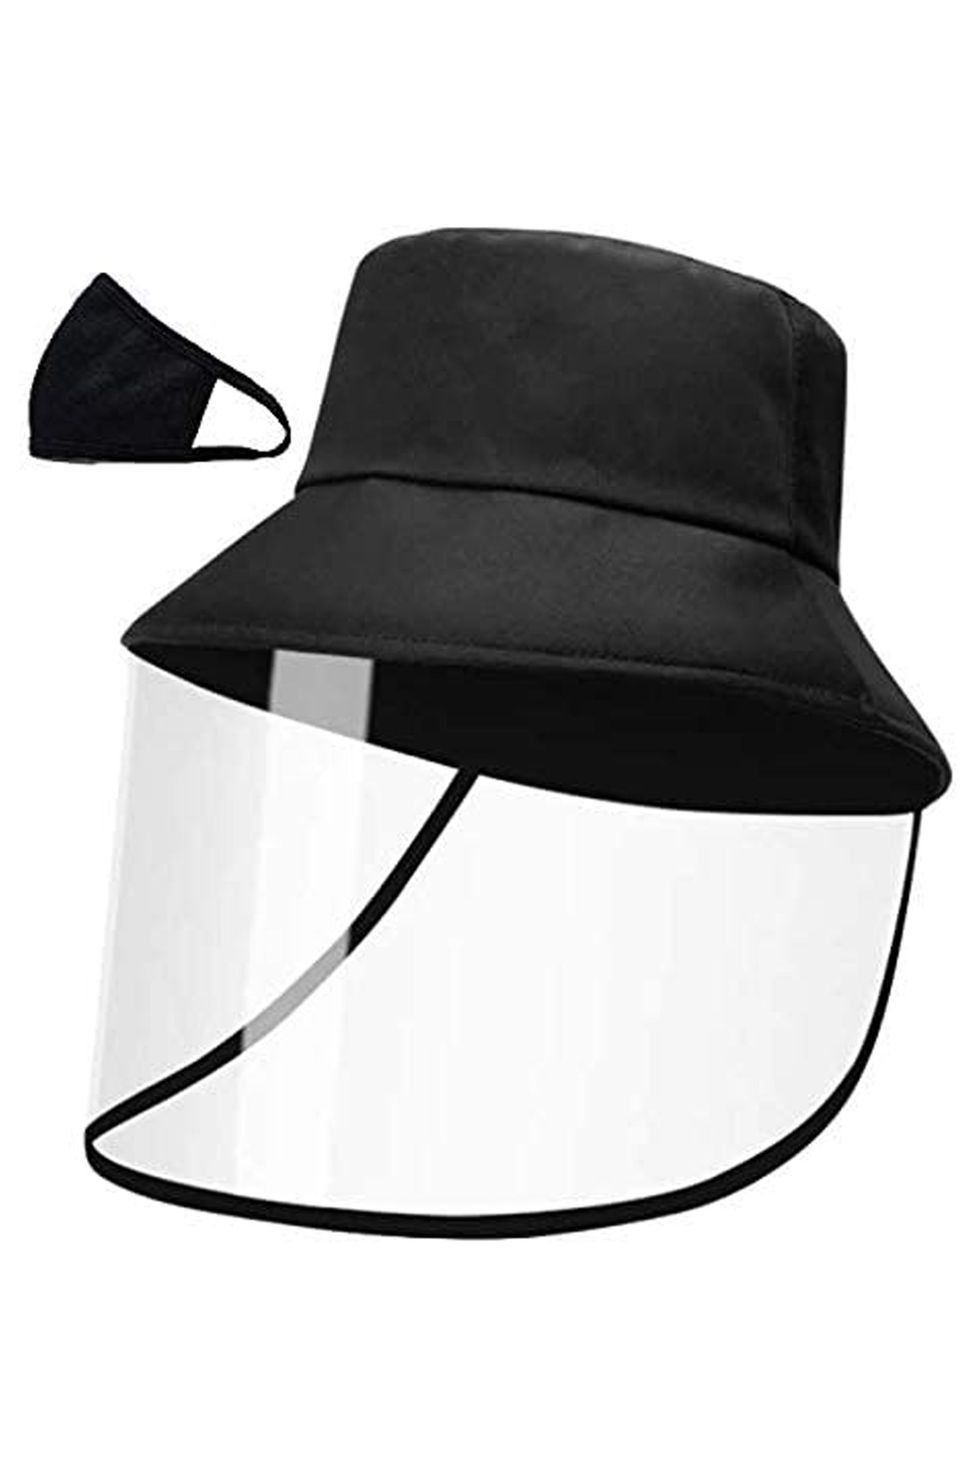 Face Shield Bucket Hat